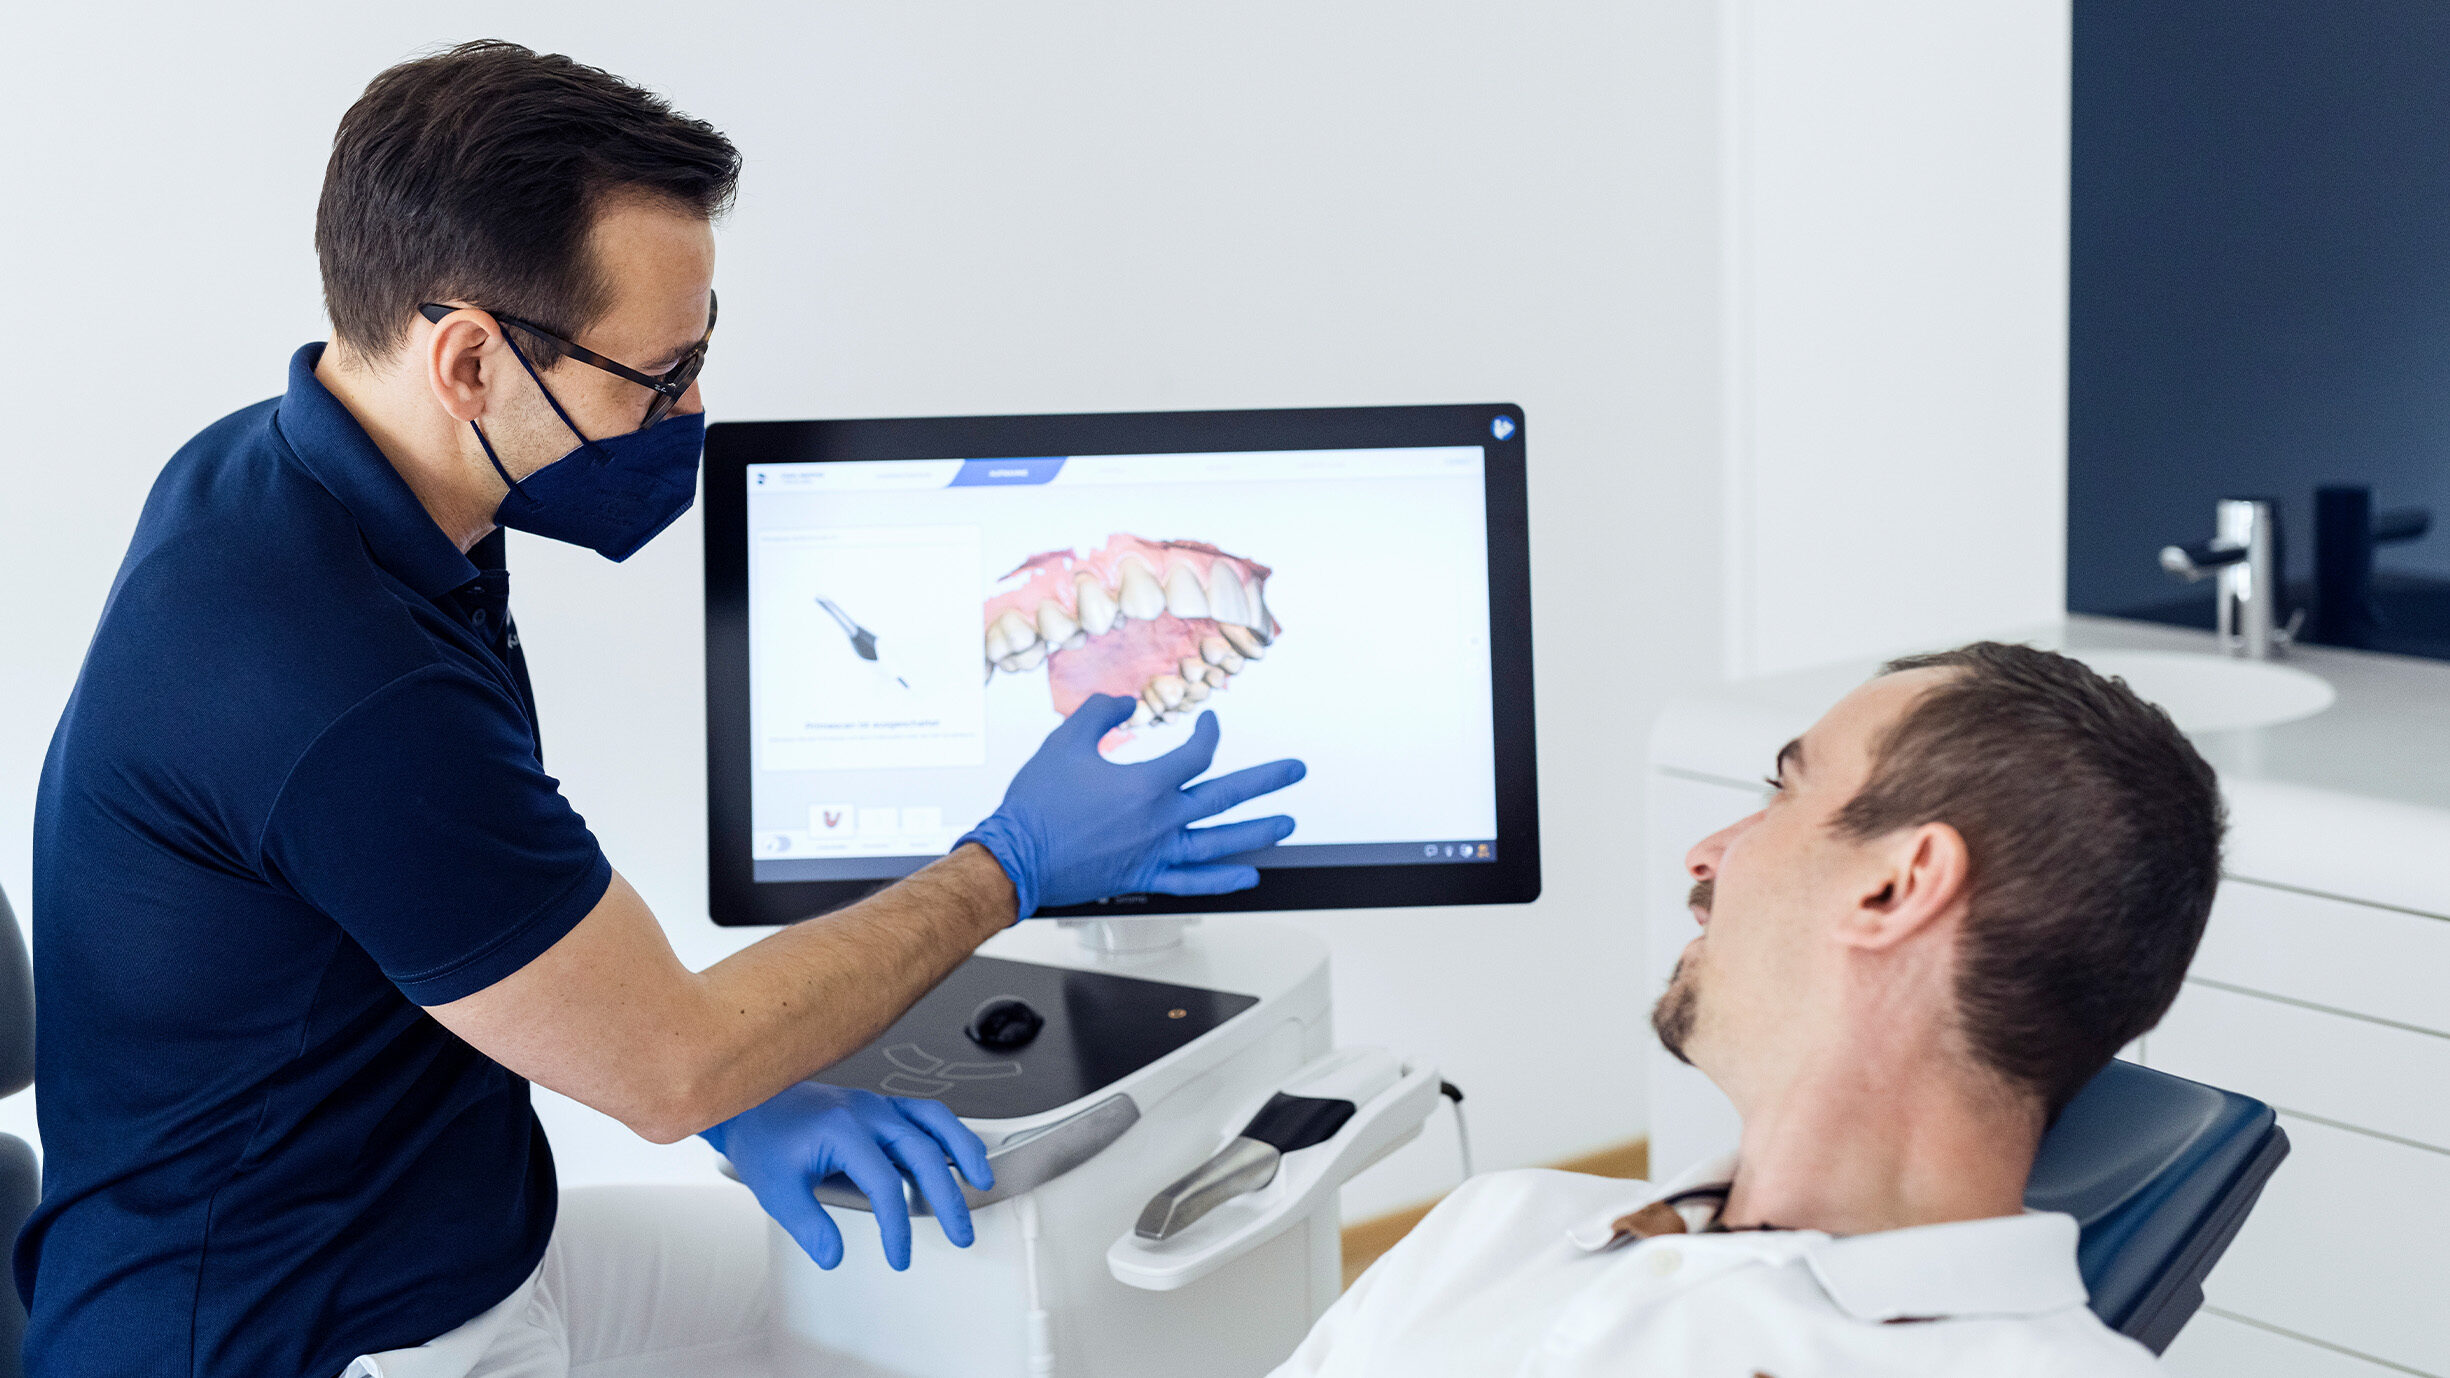 Dr Burger & Partner Zahnarzt Zeigt Dem Patient Auf Das Bild